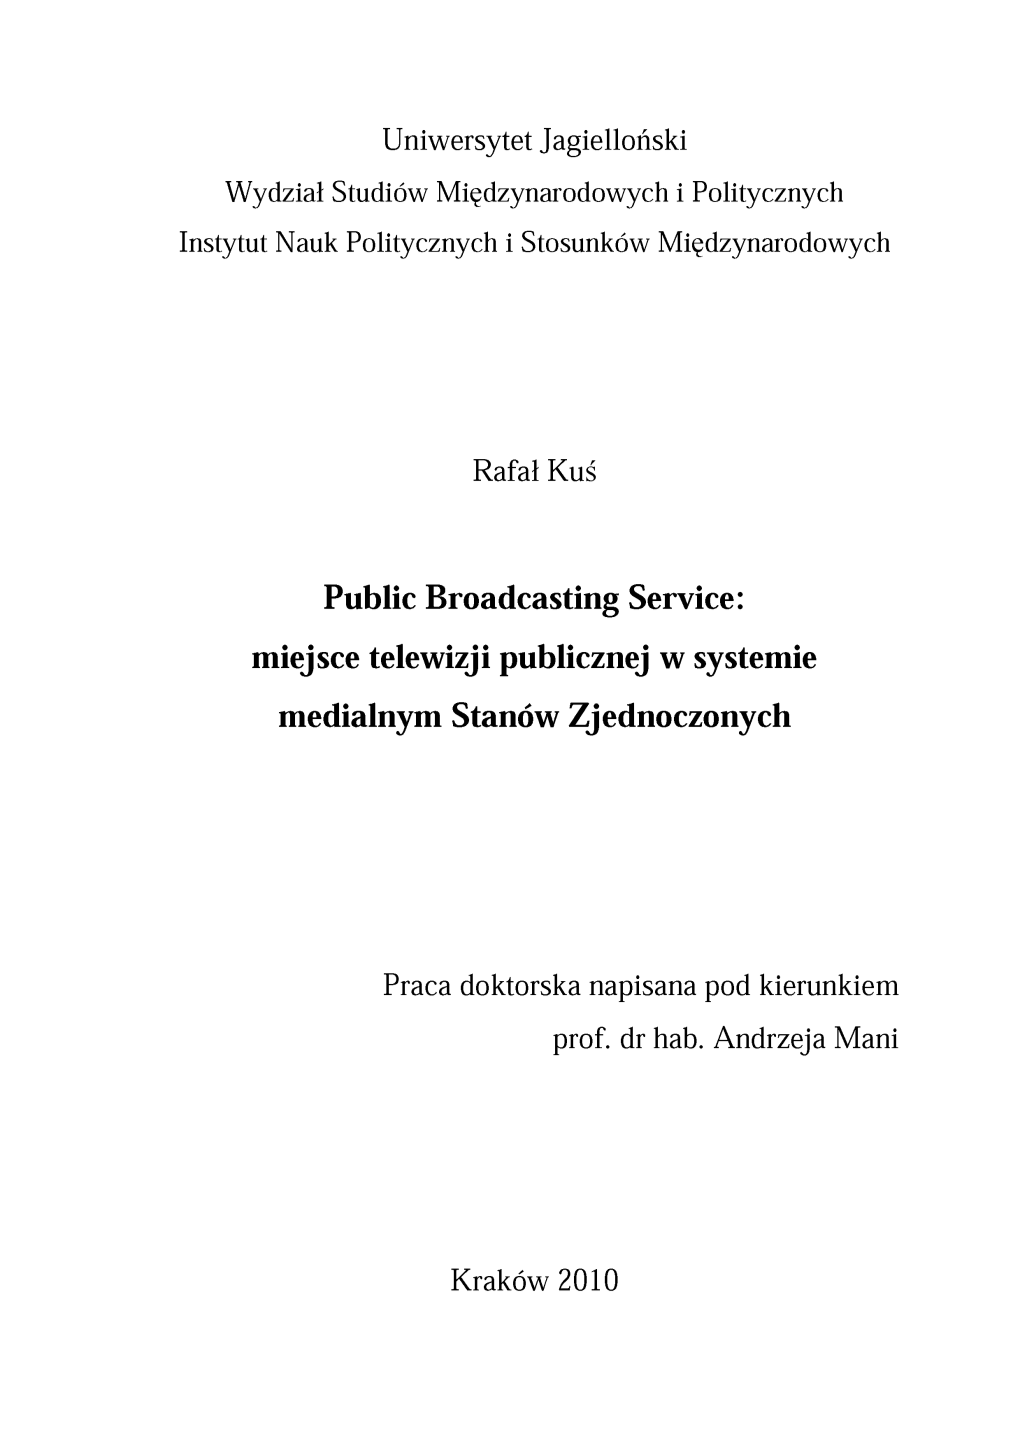 Public Broadcasting Service: Miejsce Telewizji Publicznej W Systemie Medialnym Stanów Zjednoczonych